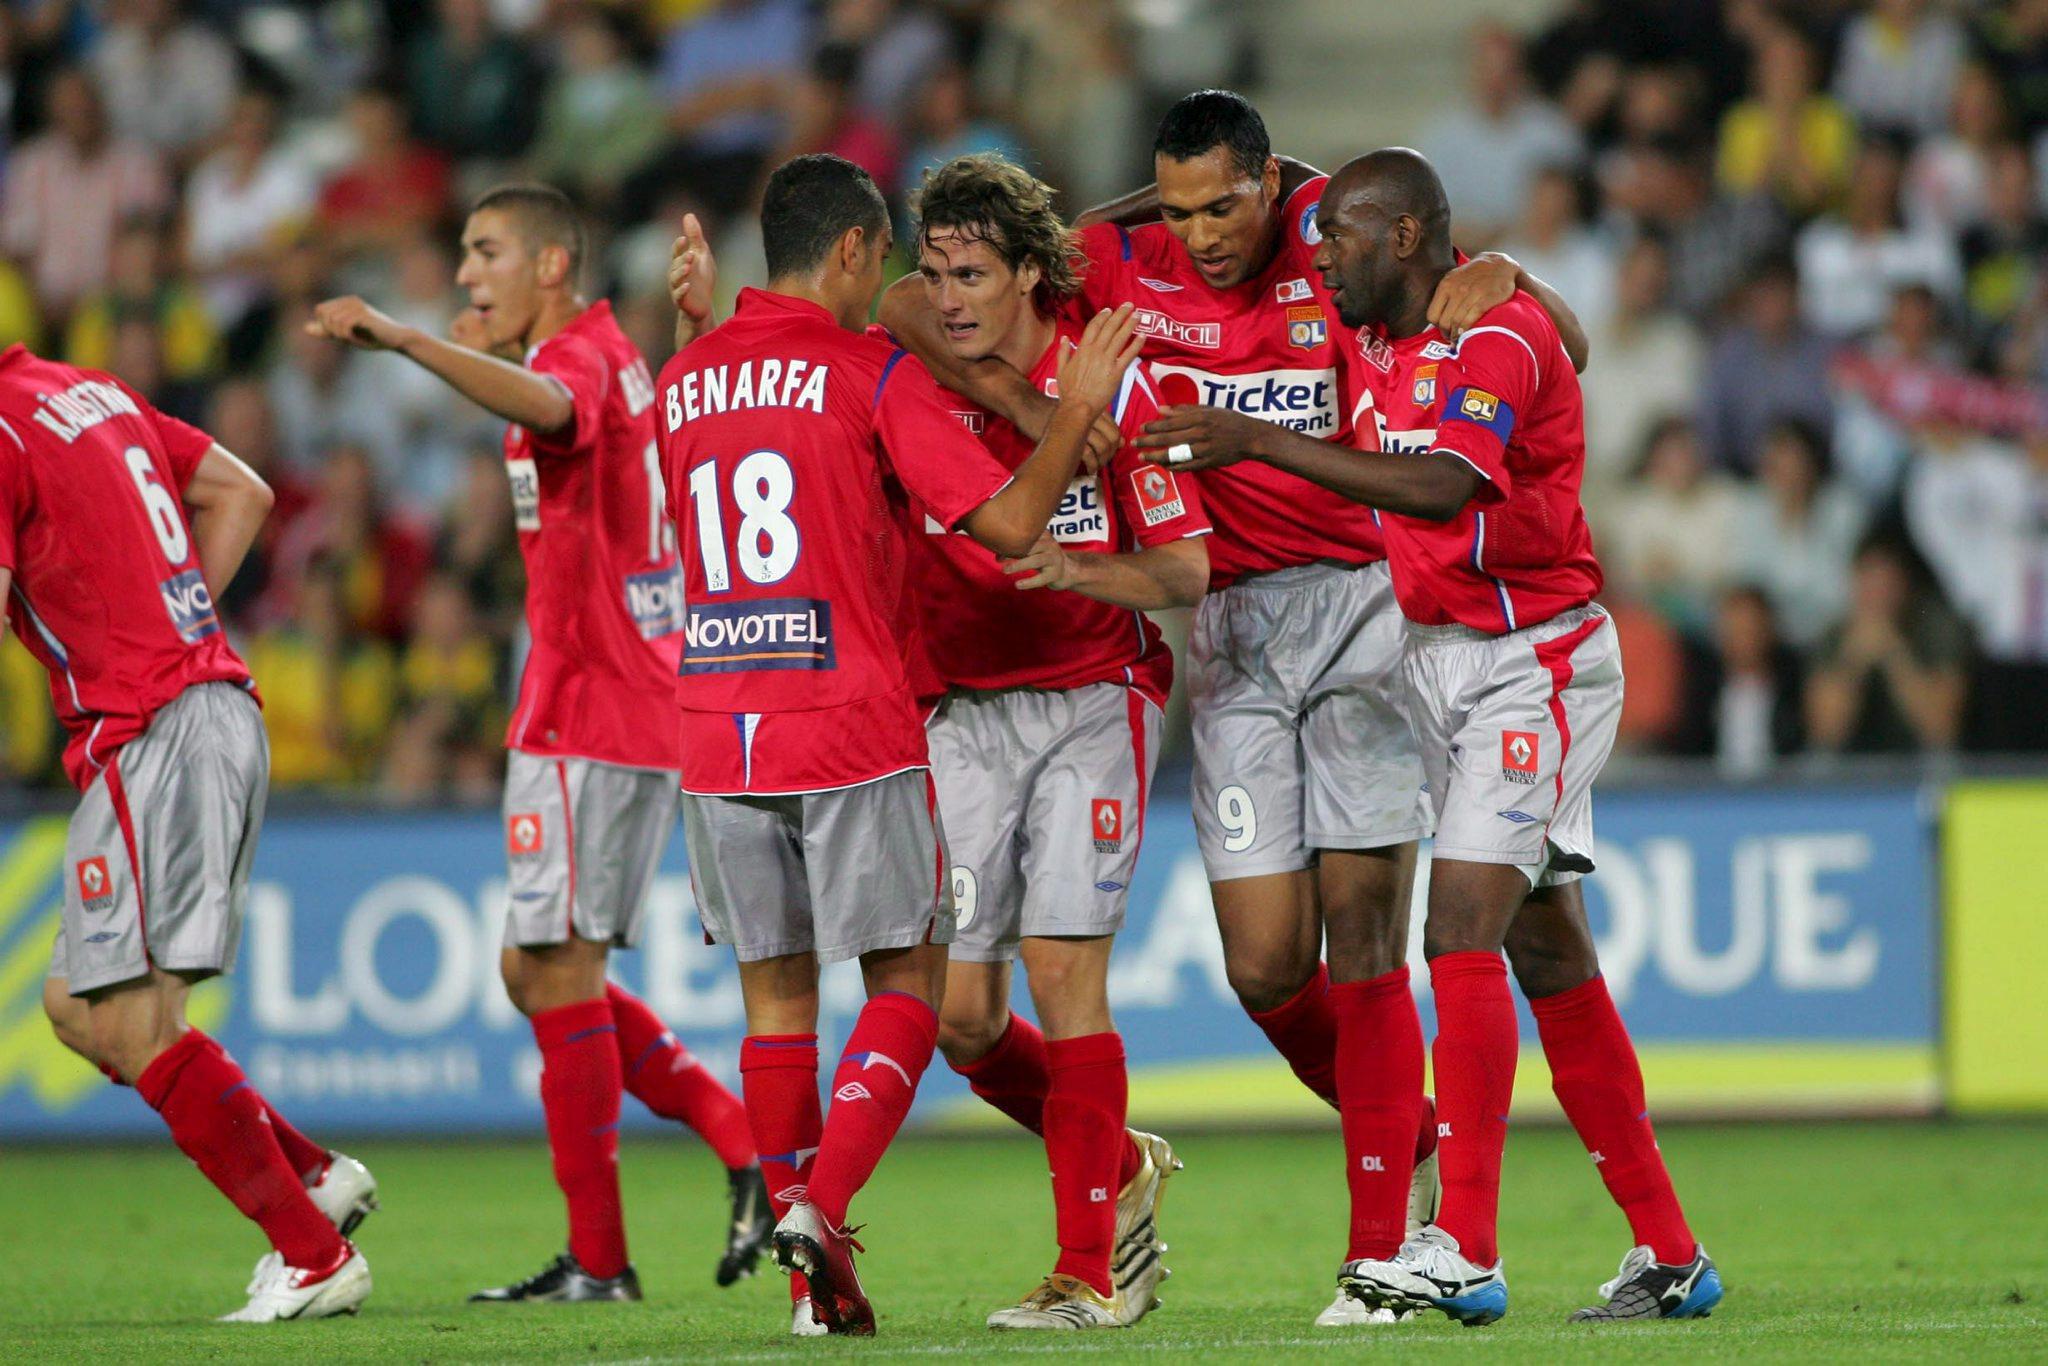 LÆREGUTT: Karim Benzema kan skimtes til venstre i bildet mens John Carew jubler sammen med Hatem Ben Arfa, Sebastien Squillaci og Claudio Cacapa etter en scoring mot Nantes i august 2006. 